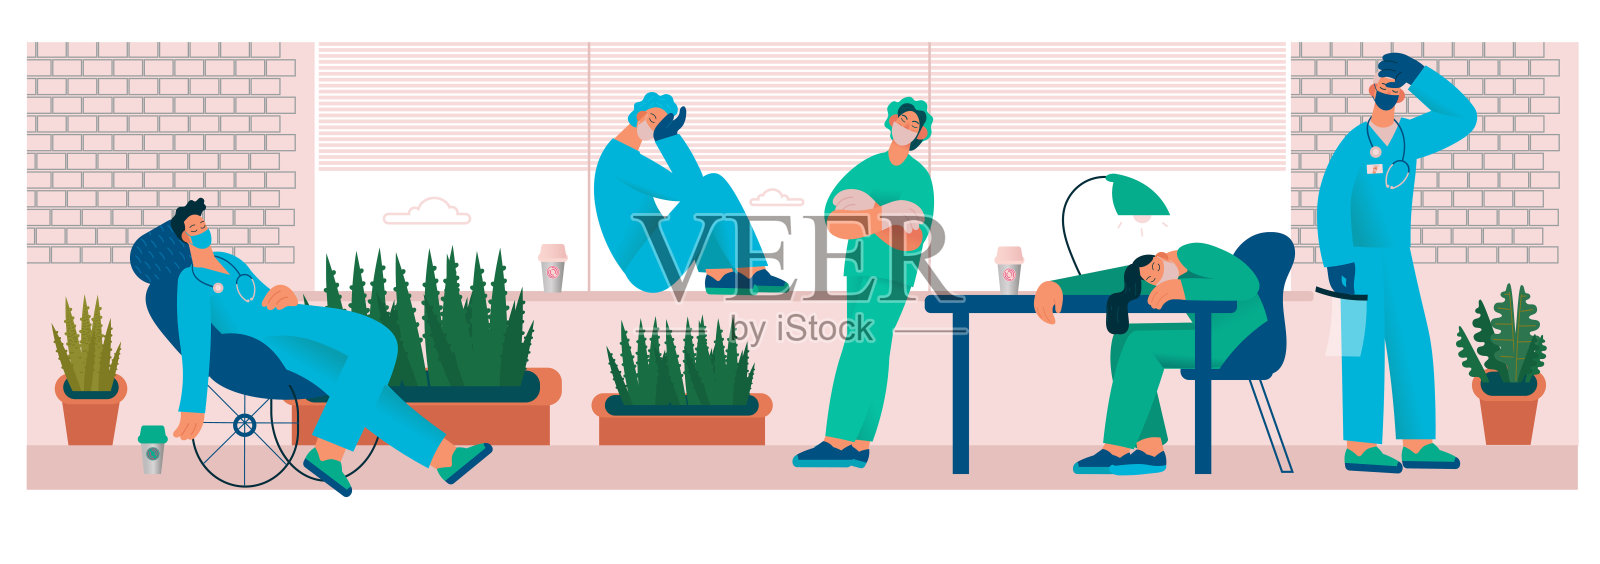 劳累过度的医生或护士在办公室里喝咖啡。插画图片素材